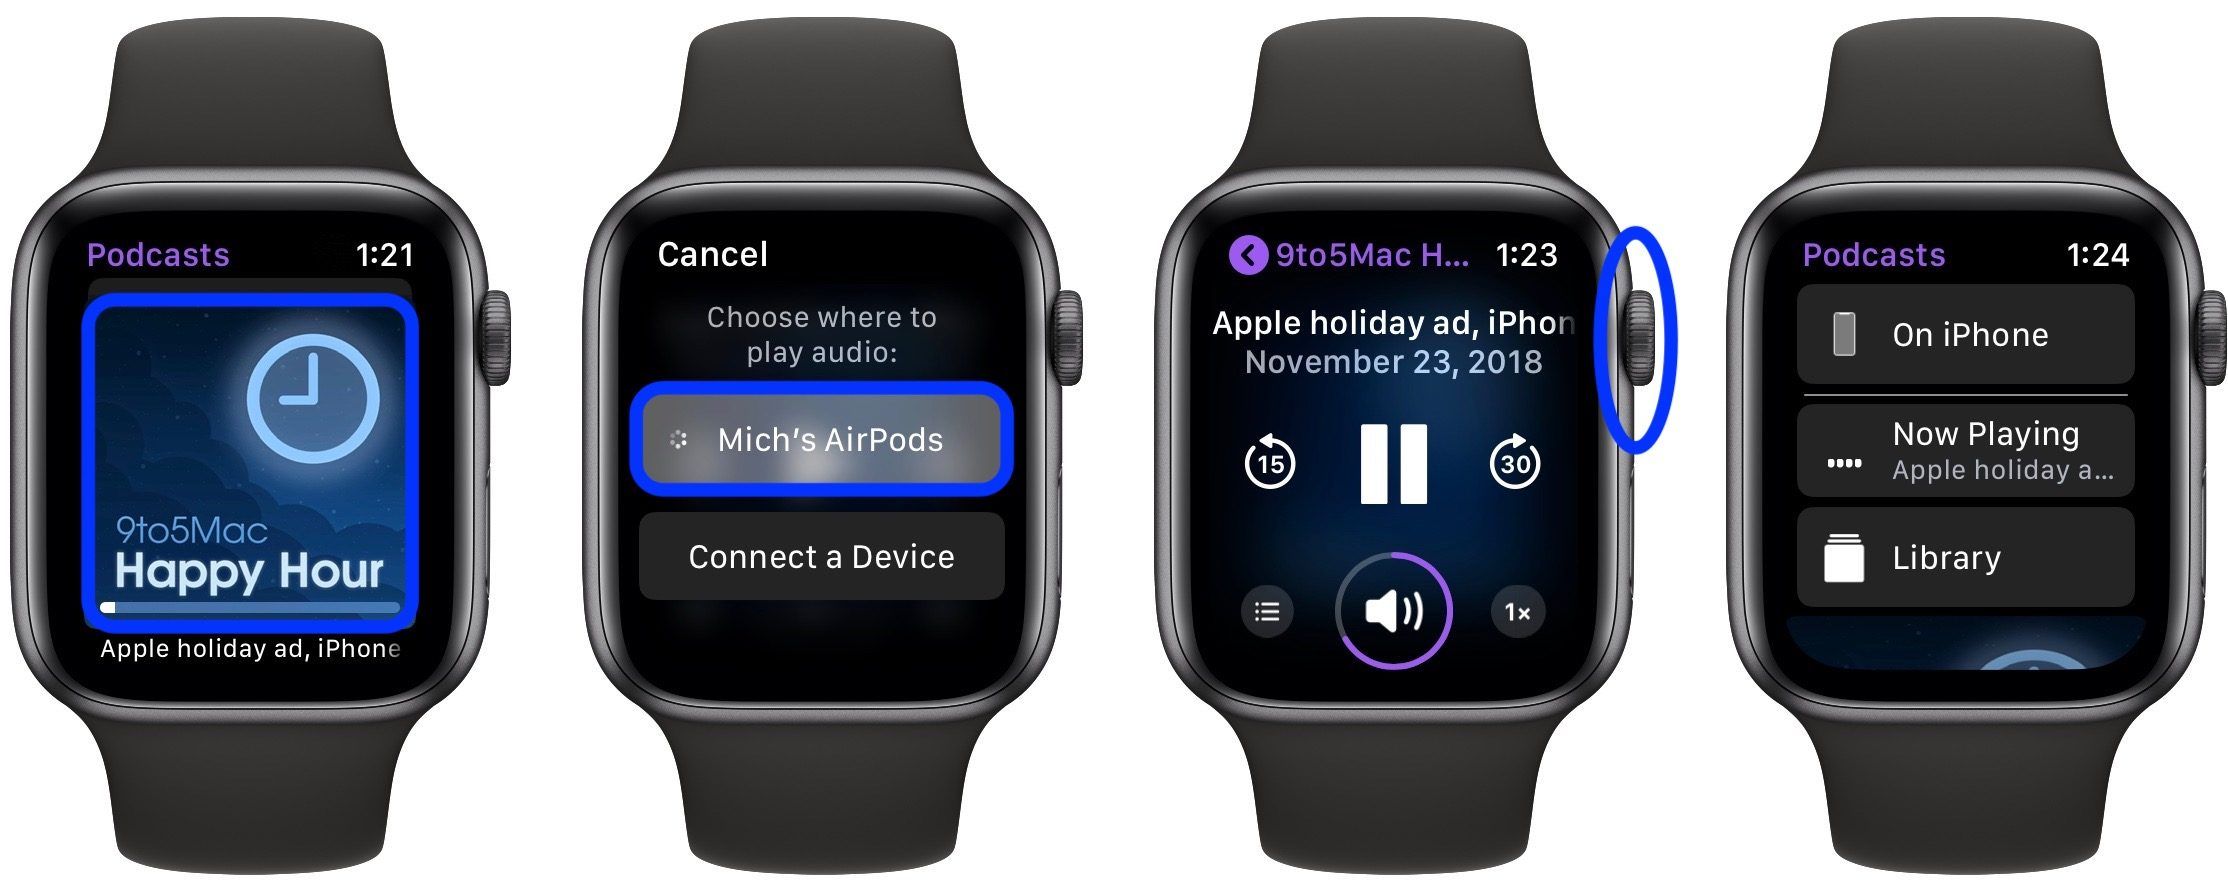 синхронизировать музыку и подкасты с Apple Watch